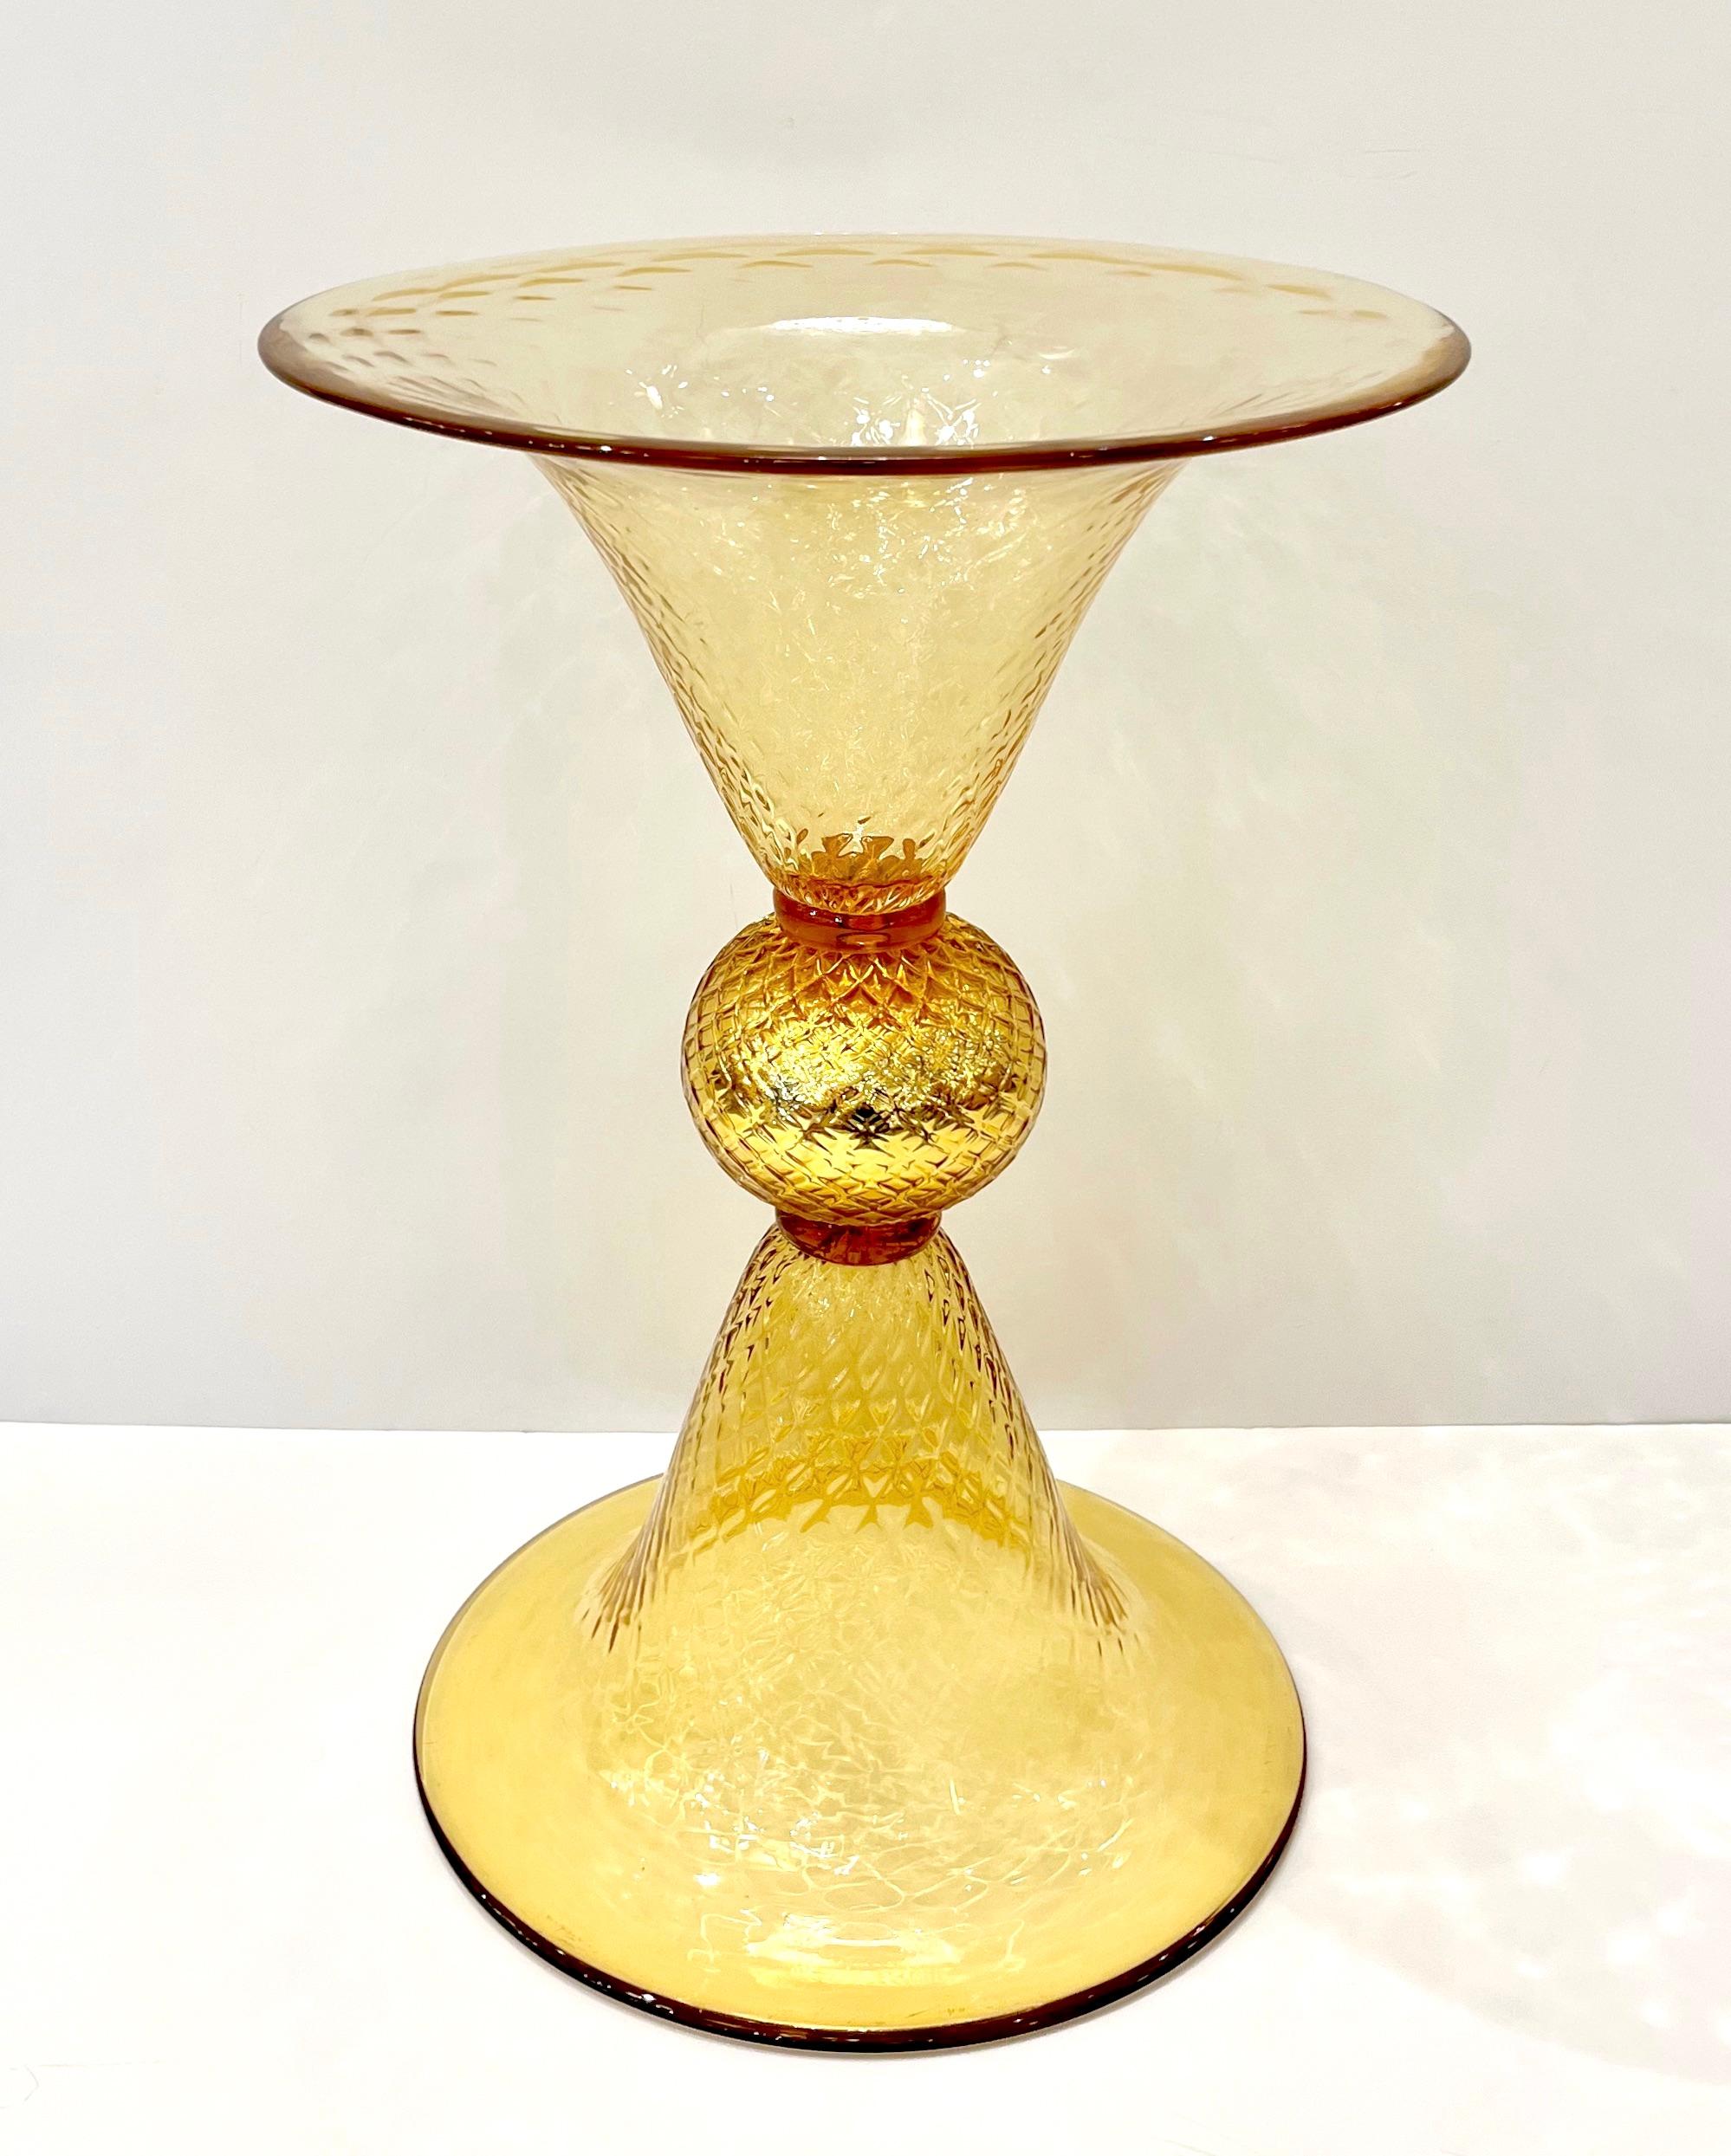 Zeitgenössische venezianische Goldvase aus mundgeblasenem Murano-Glas, bearbeitet mit reinem 24-karätigem Gold. Der untere und der obere Teil können beide als Sockel fungieren. Das Gehäuse besteht aus strukturiertem Glas mit einem Wabenmuster, das